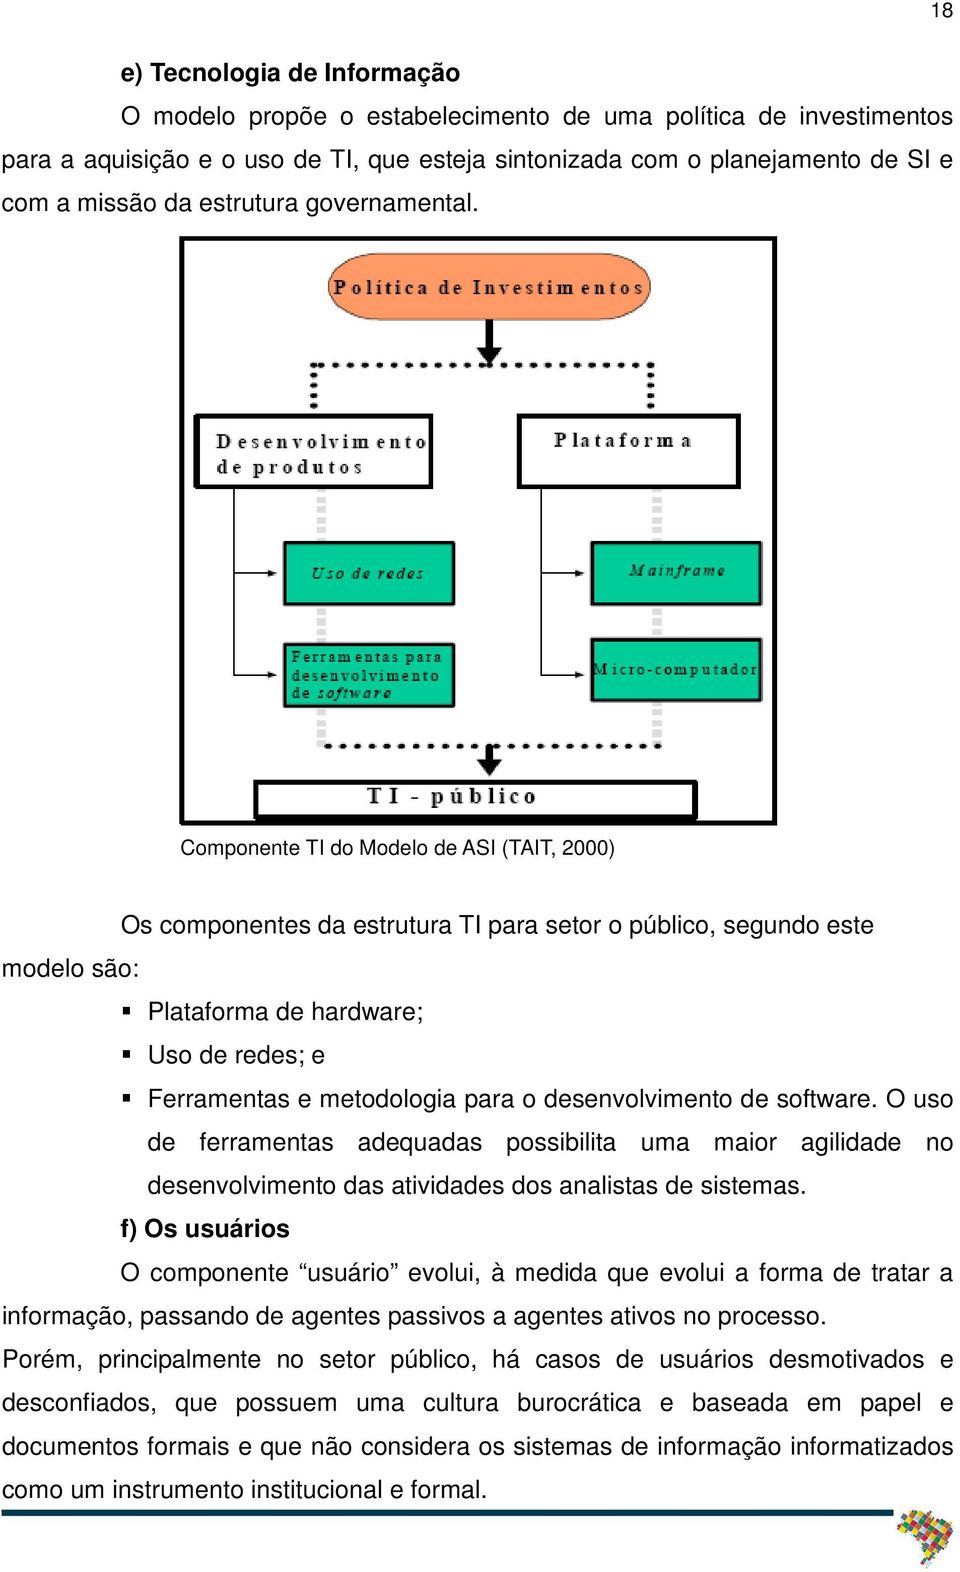 Componente TI do Modelo de ASI (TAIT, 2000) Os componentes da estrutura TI para setor o público, segundo este modelo são: Plataforma de hardware; Uso de redes; e Ferramentas e metodologia para o